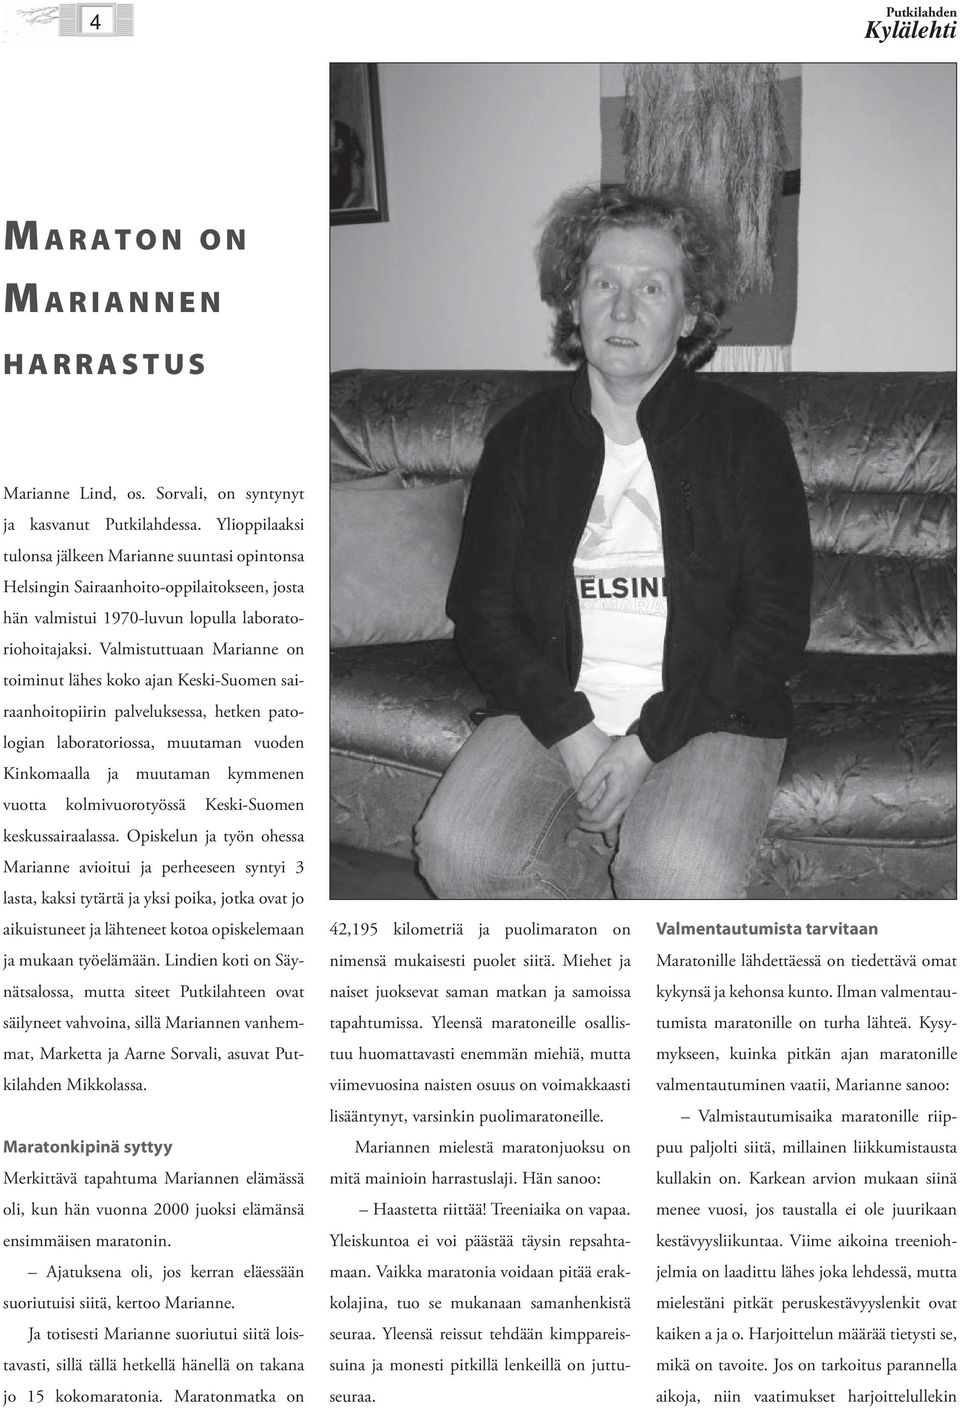 Valmistuttuaan Marianne on toiminut lähes koko ajan Keski-Suomen sairaanhoitopiirin palveluksessa, hetken patologian laboratoriossa, muutaman vuoden Kinkomaalla ja muutaman kymmenen vuotta